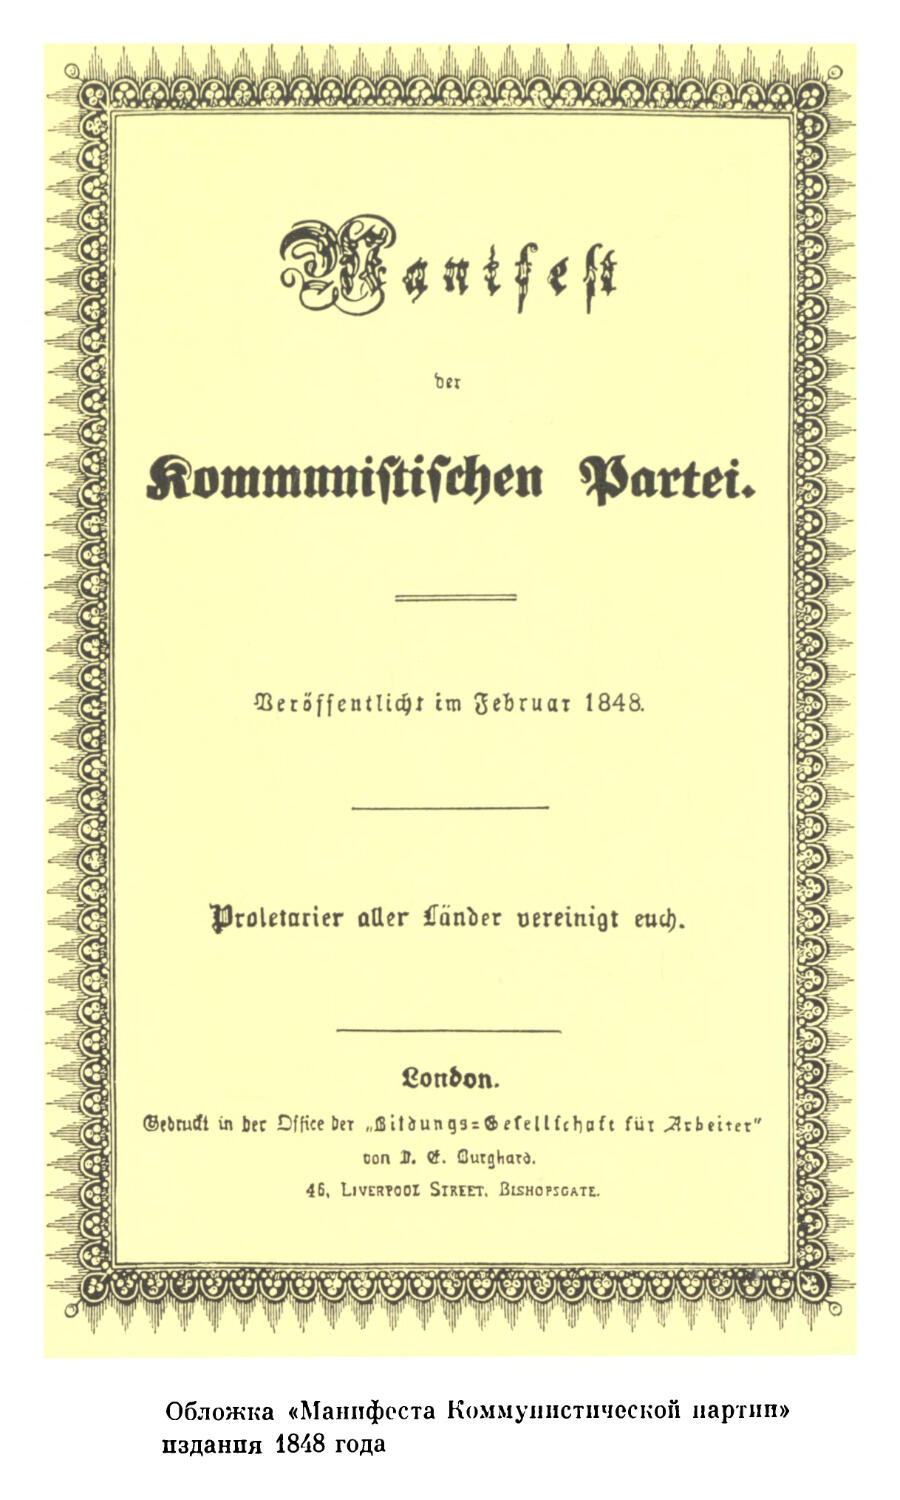 Фото: Обложка «Манифеста Коммунистической партии» издания 1848 г.